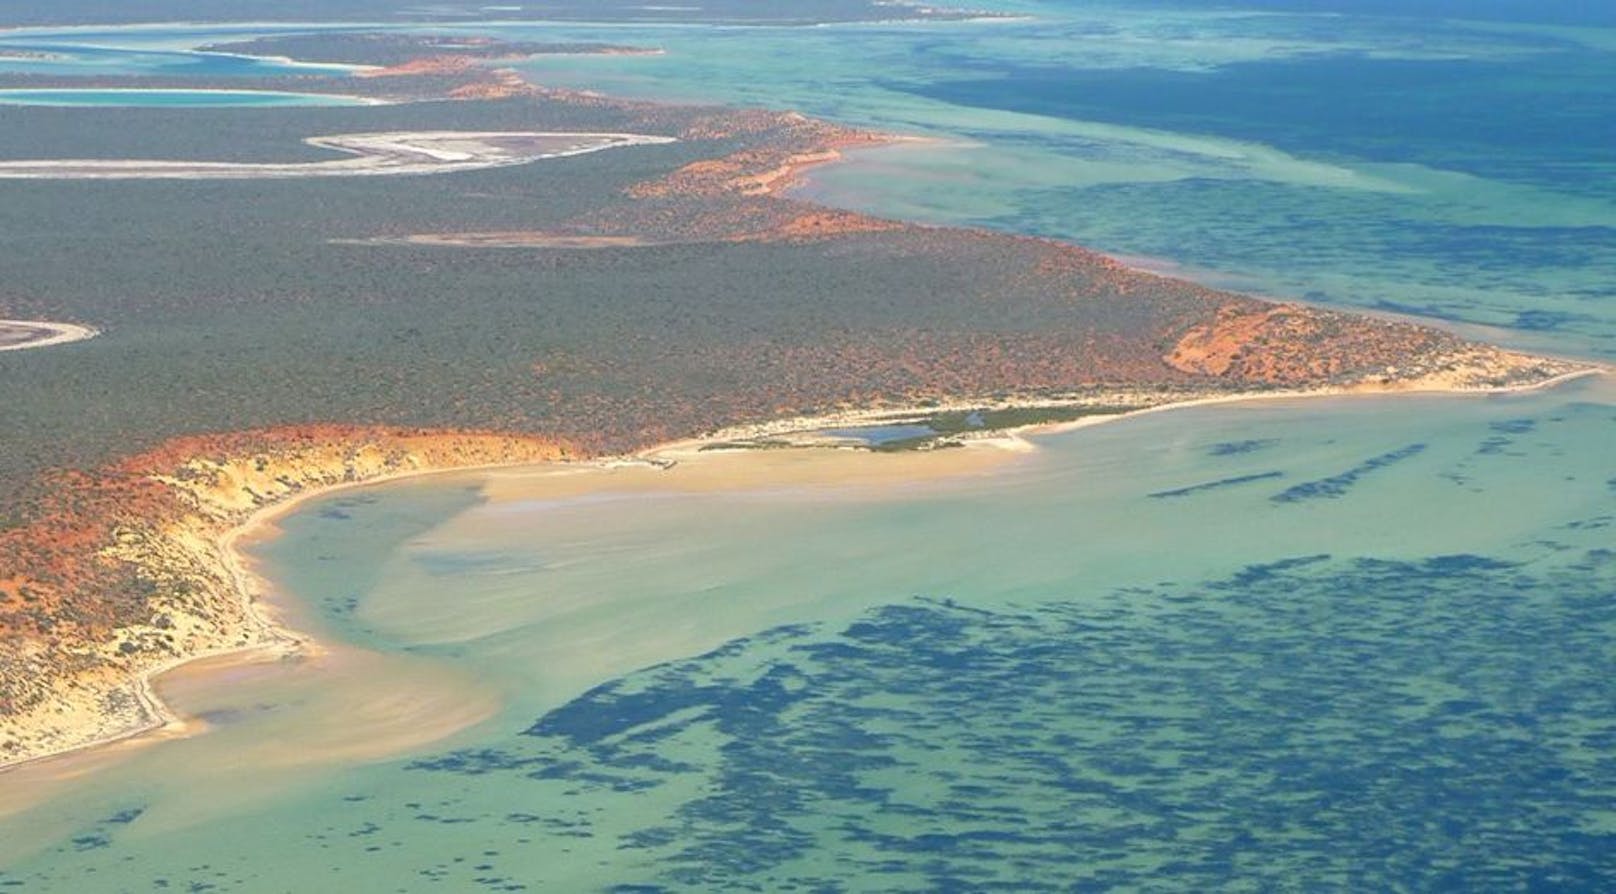 Ein Luftbild der Shark Bay, einschließlich des Seegrases, das als dunkle Flecken im Wasser erscheint.